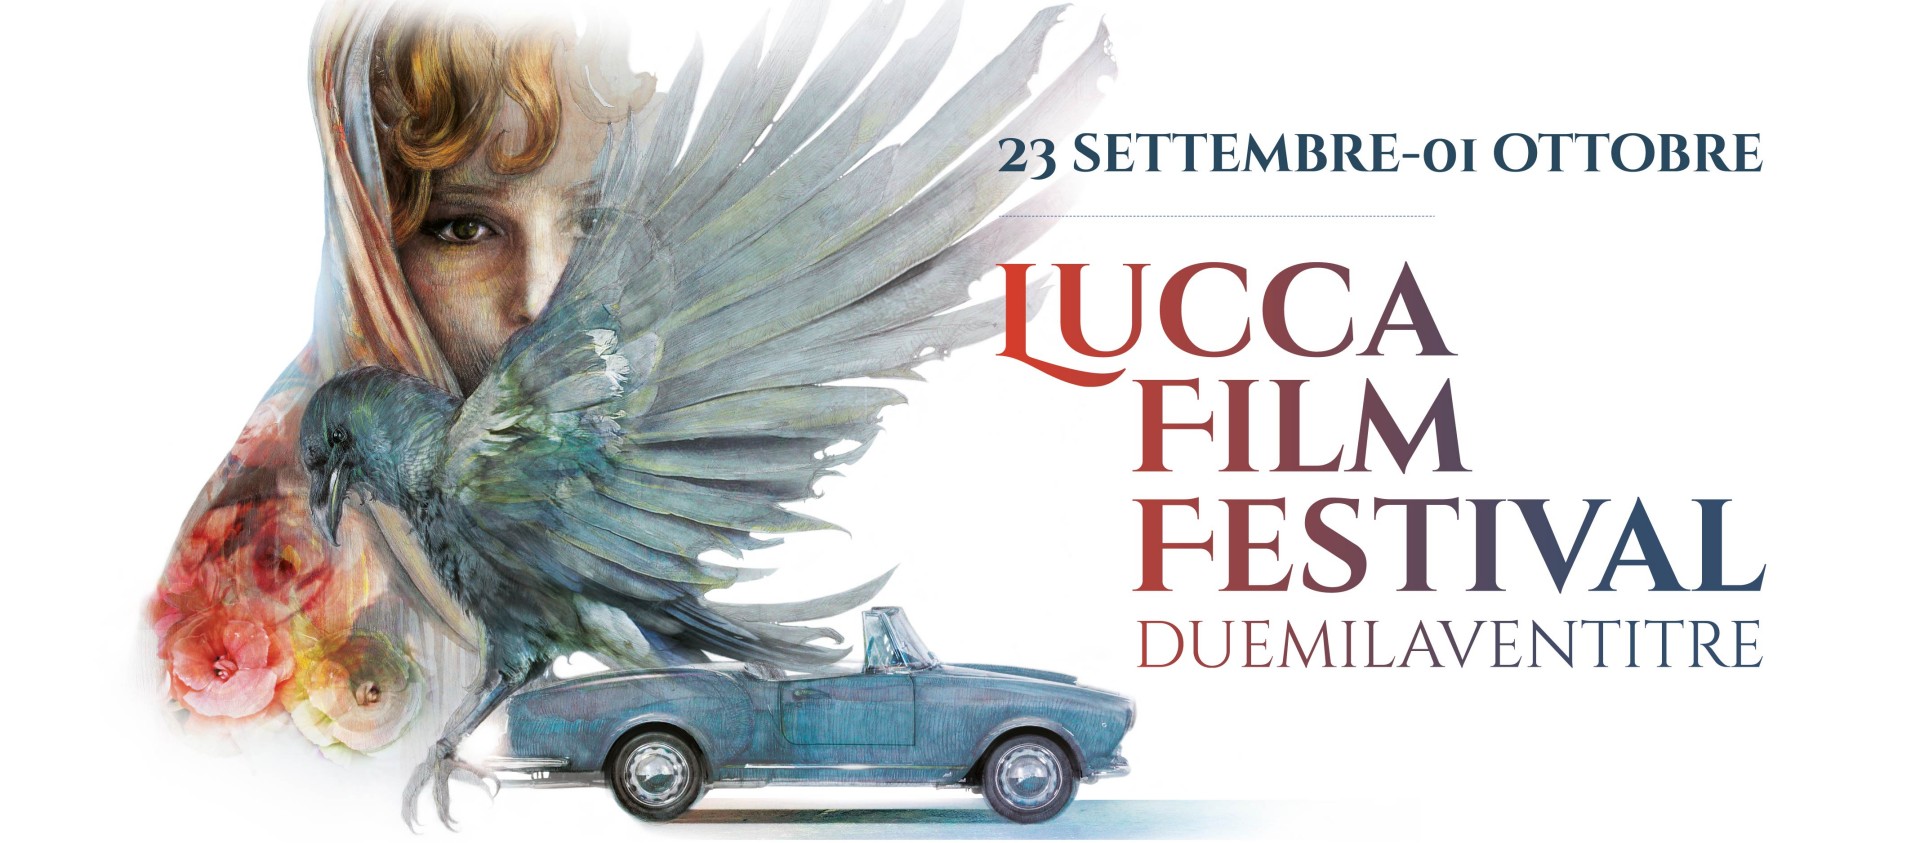 Lucca Film Festival 2023, dal 23 settembre al 1 ottobre con Salvatores, Rossi Stuart, Sandrelli, Martone